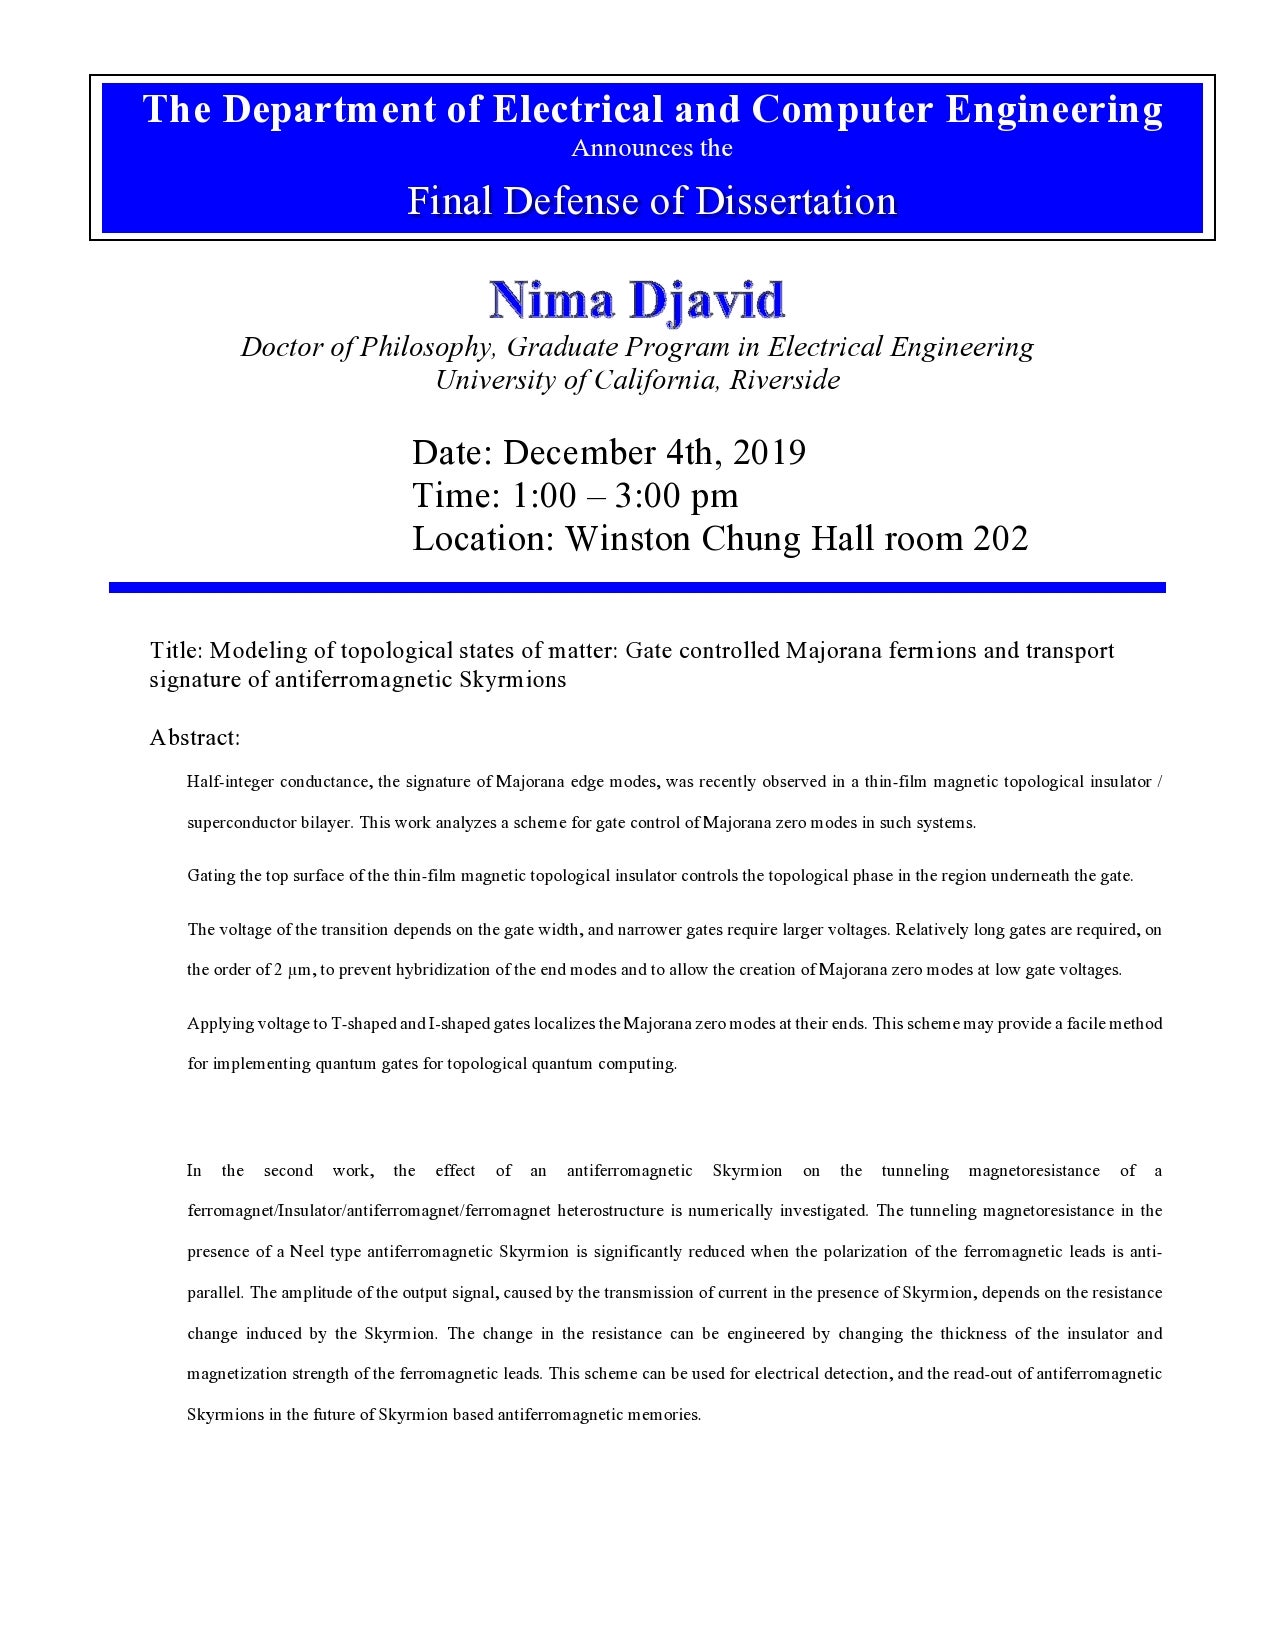 Nima Djavid PhD Dissertation Flyer